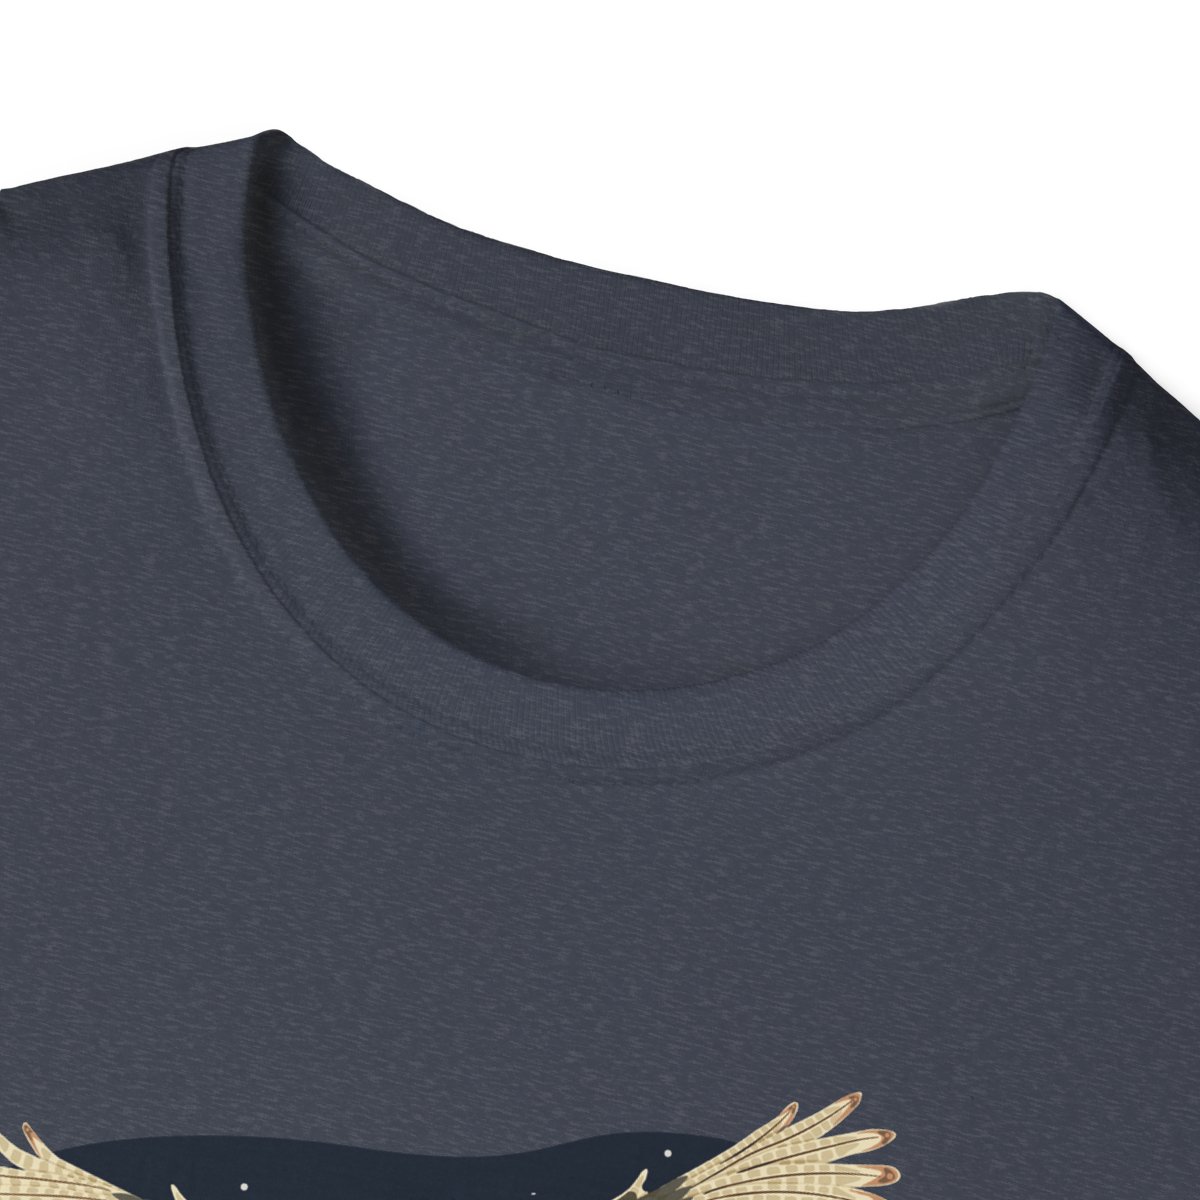 Owl Unisex Softstyle T-Shirt product thumbnail image